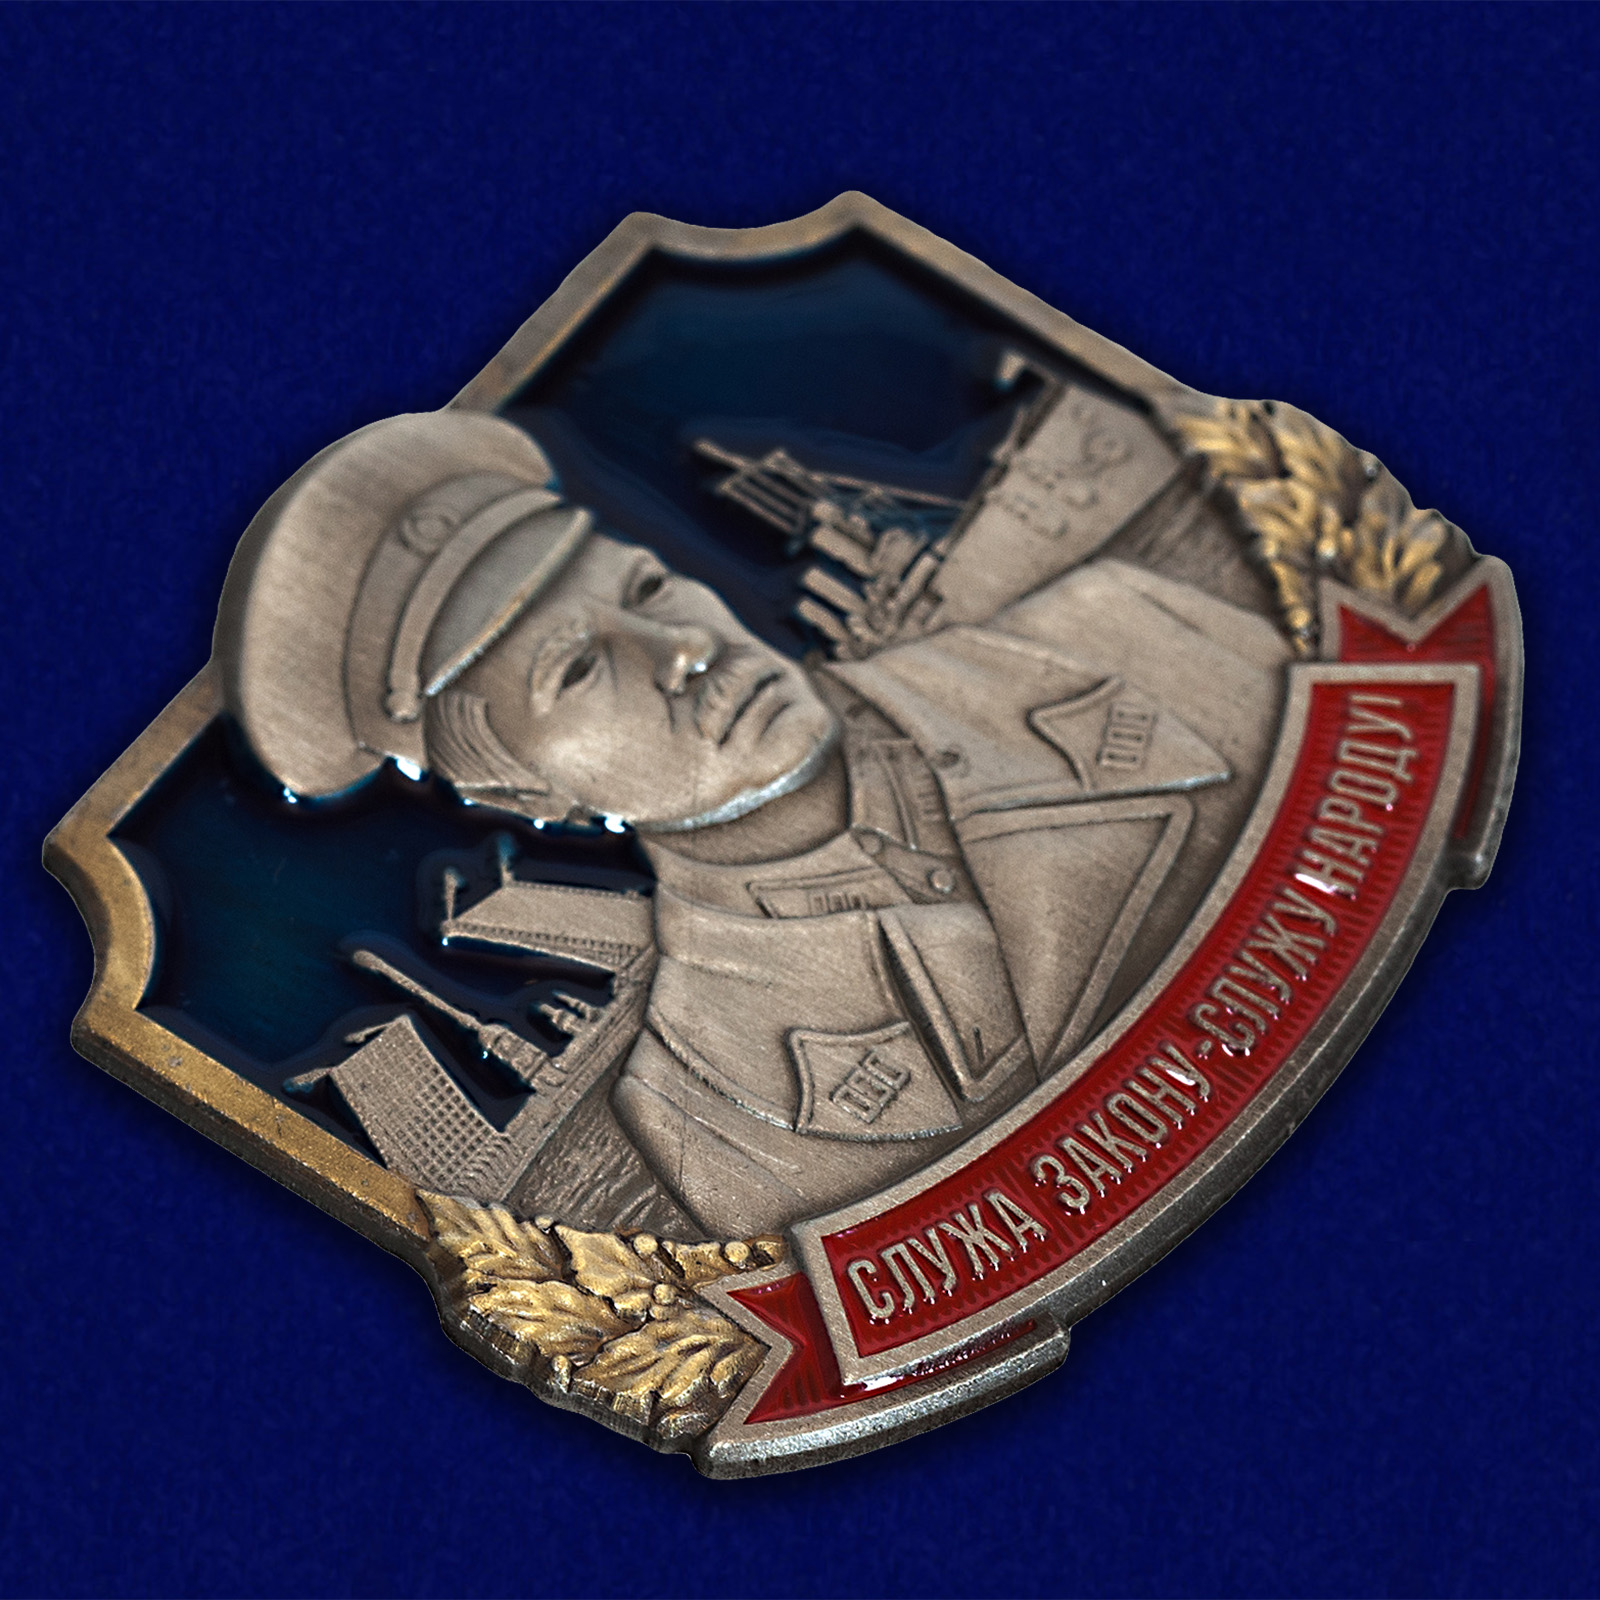 Купить жетон "Комиссар милиции Кондратьев" по выгодной цене